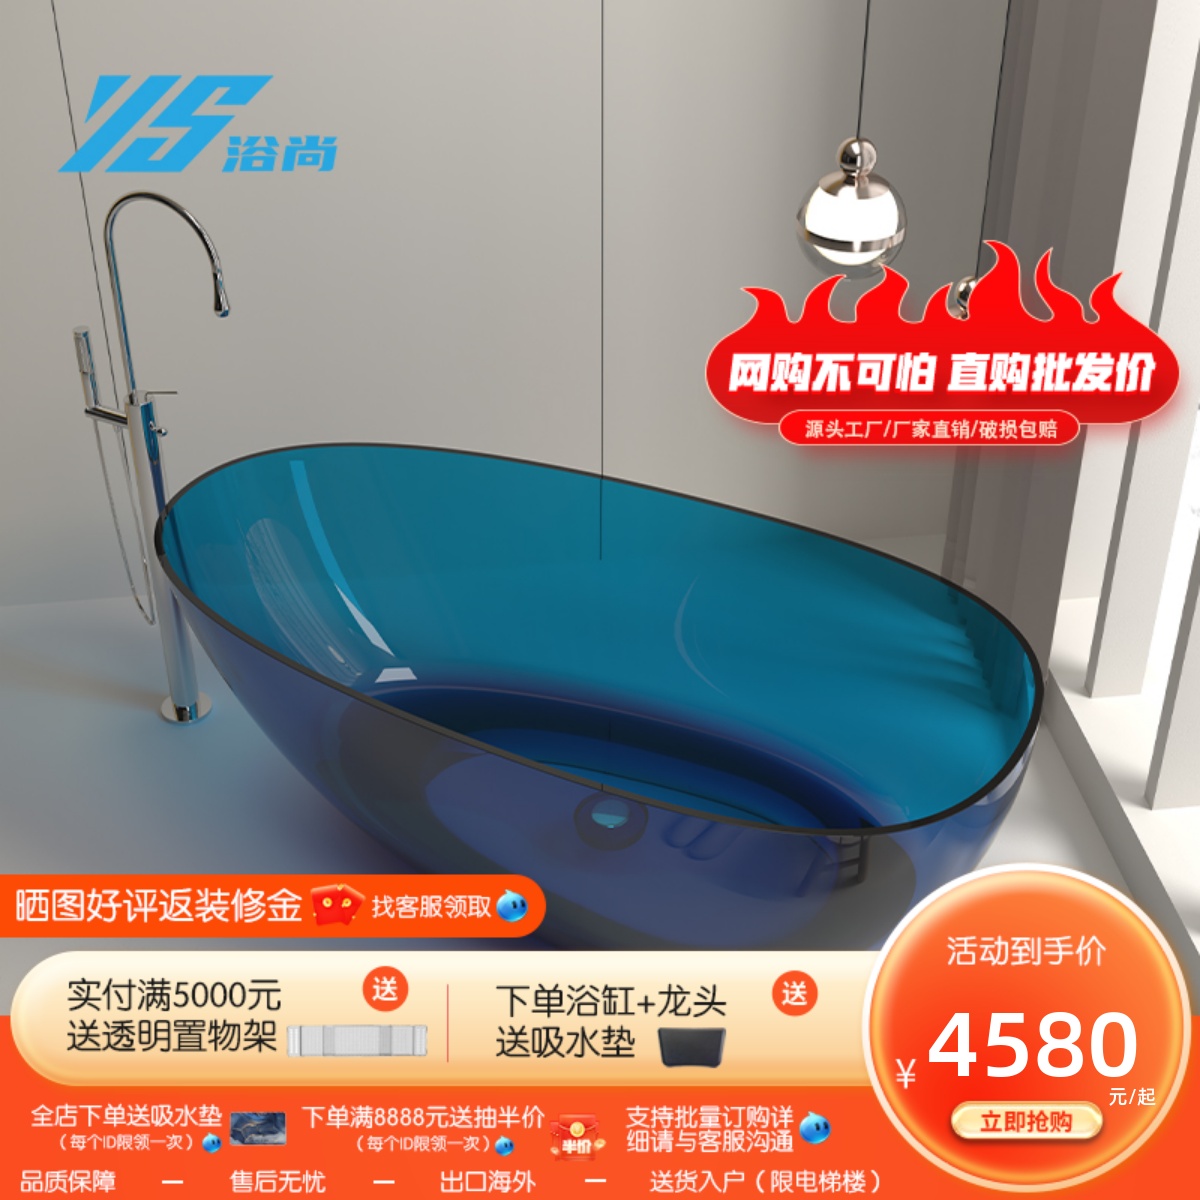 浴尚水晶浴缸透明彩色树脂薄边水滴型网红款一体式独立式浴缸蛋型